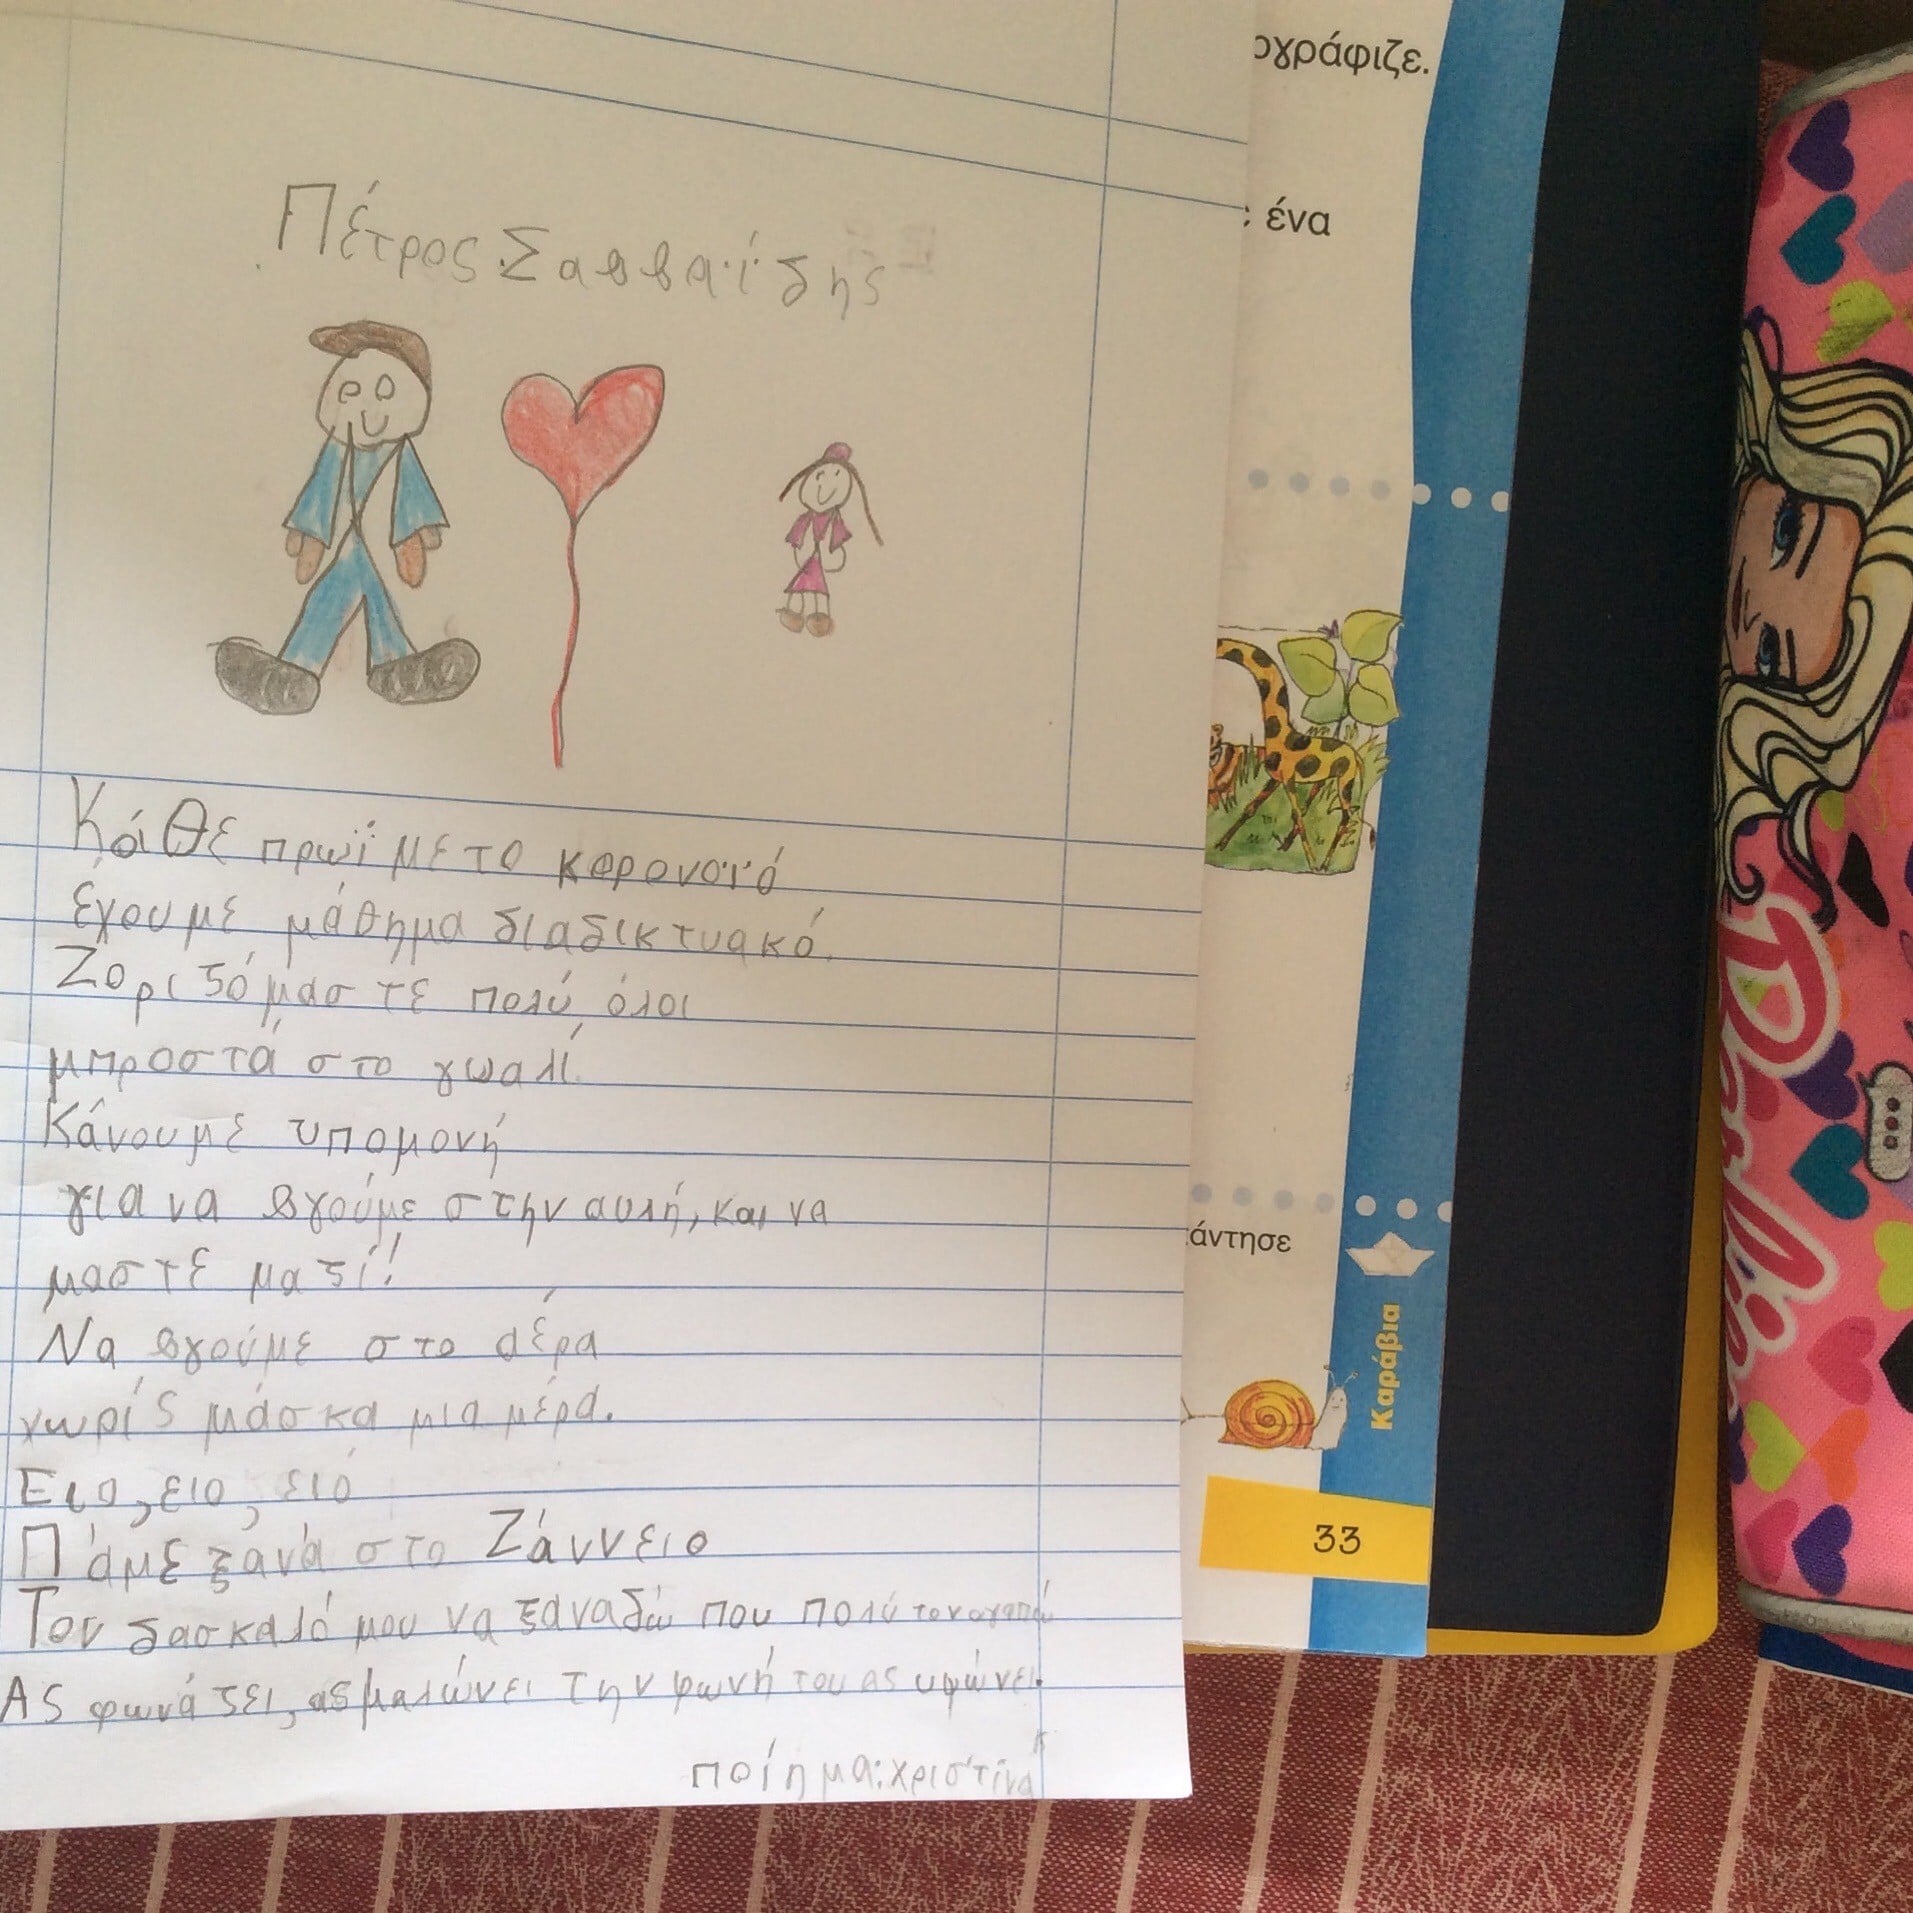 "Τον δάσκαλό μου να ξαναδώ που πολύ τον αγαπώ" - το συγκινητικό ποίημα μιας 6χρονης μαθήτριας